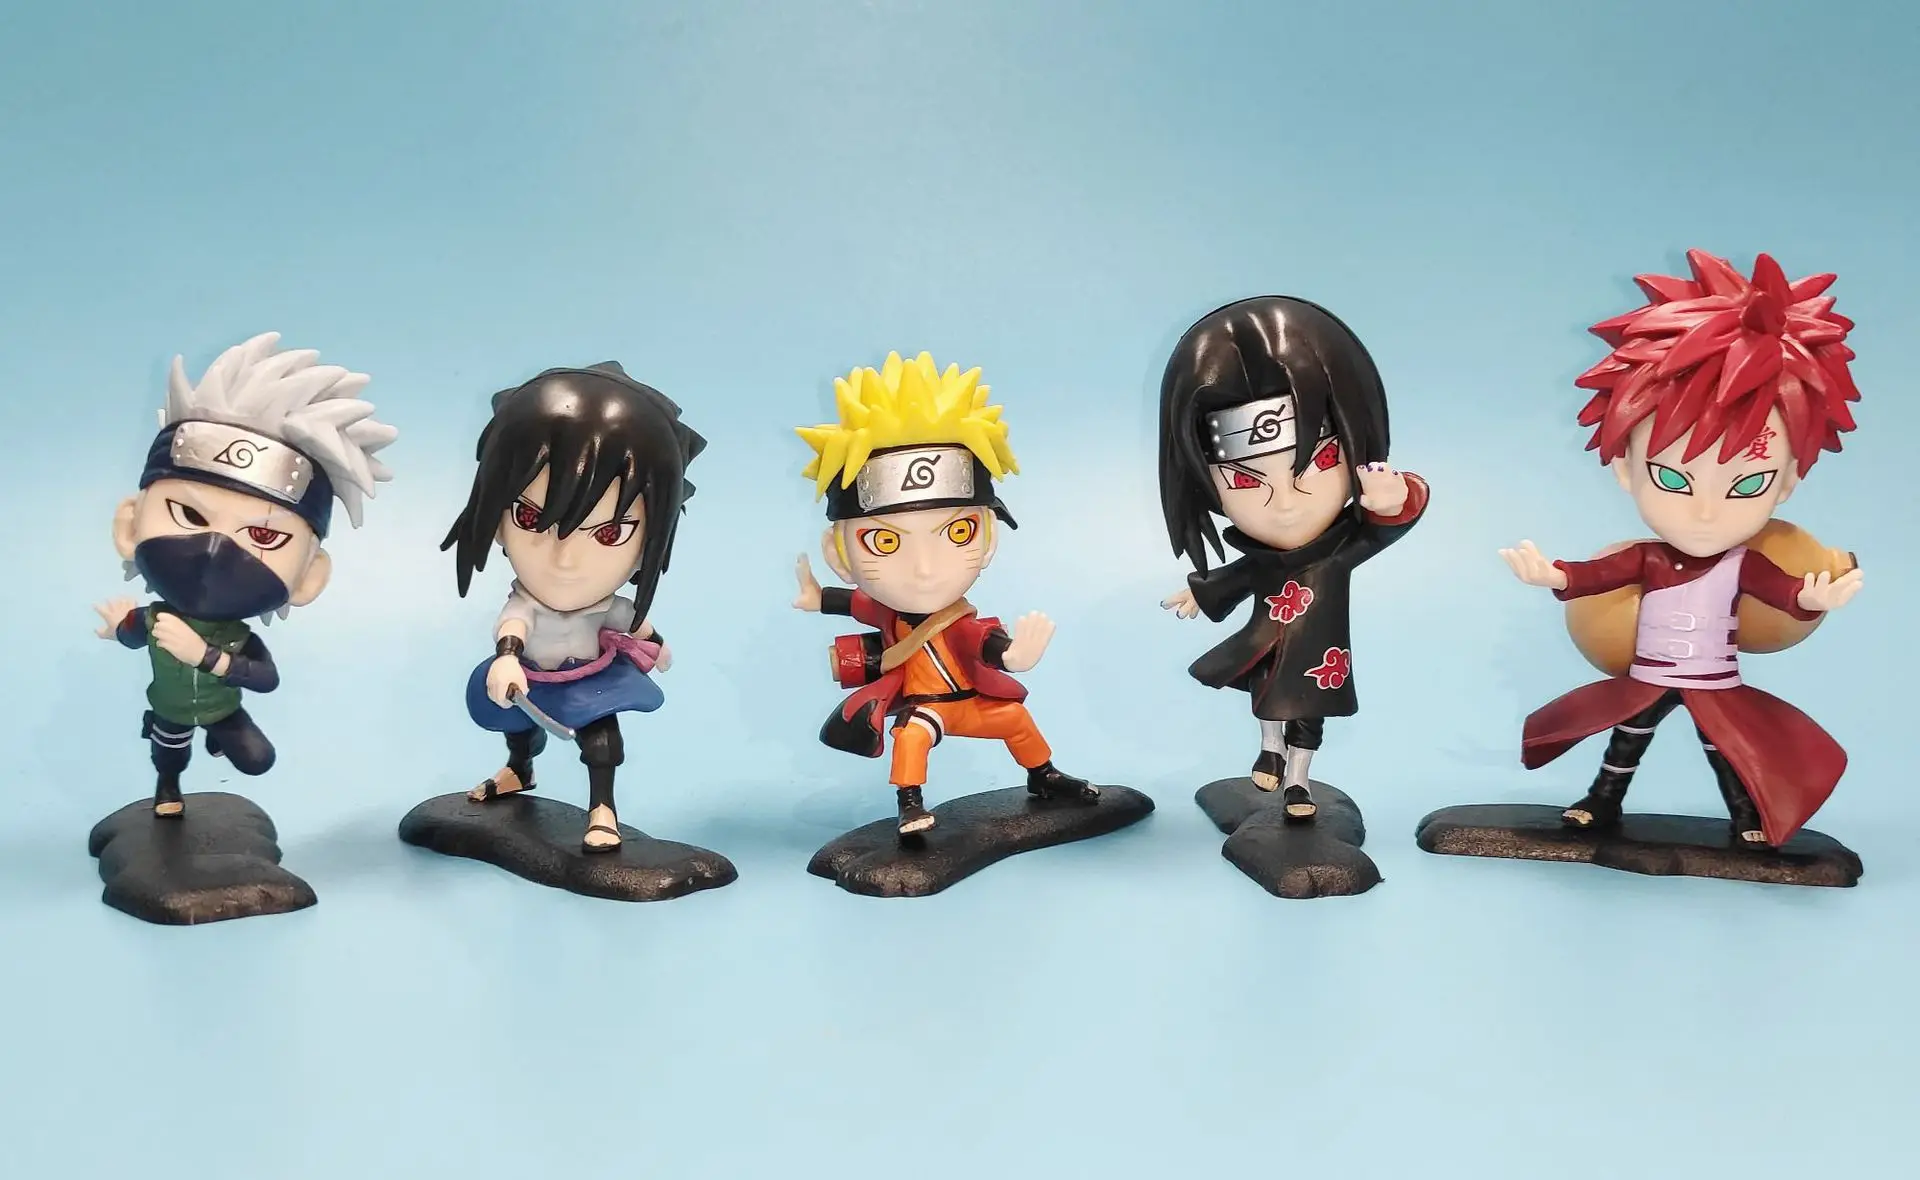 Anime cartoon 6 hatake kakashi figure dolls per set mini 3D pvc decoration Hokage action figure toys for gift